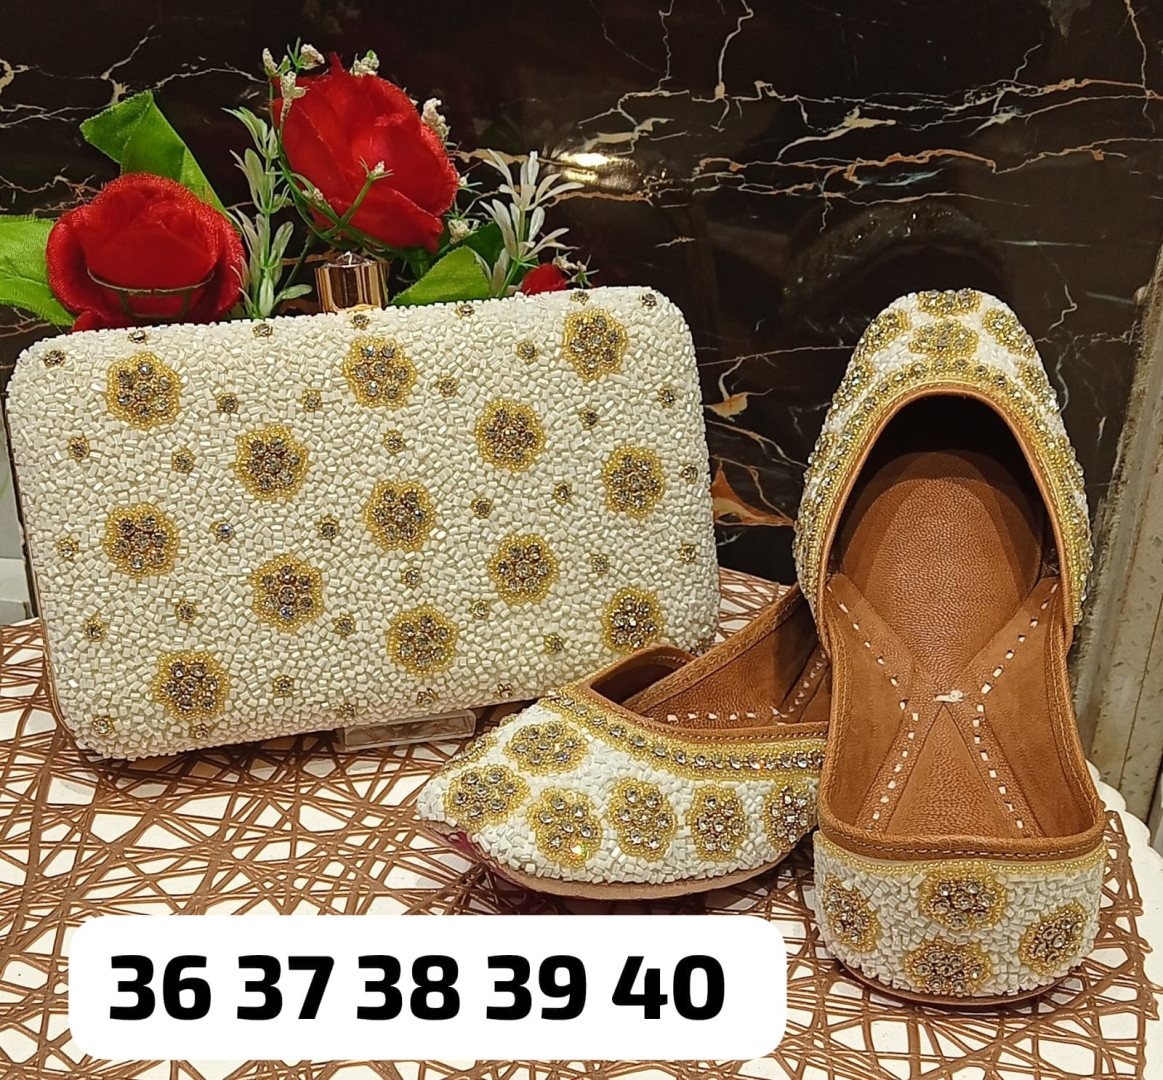 clutch handbag and jutti sandals for women